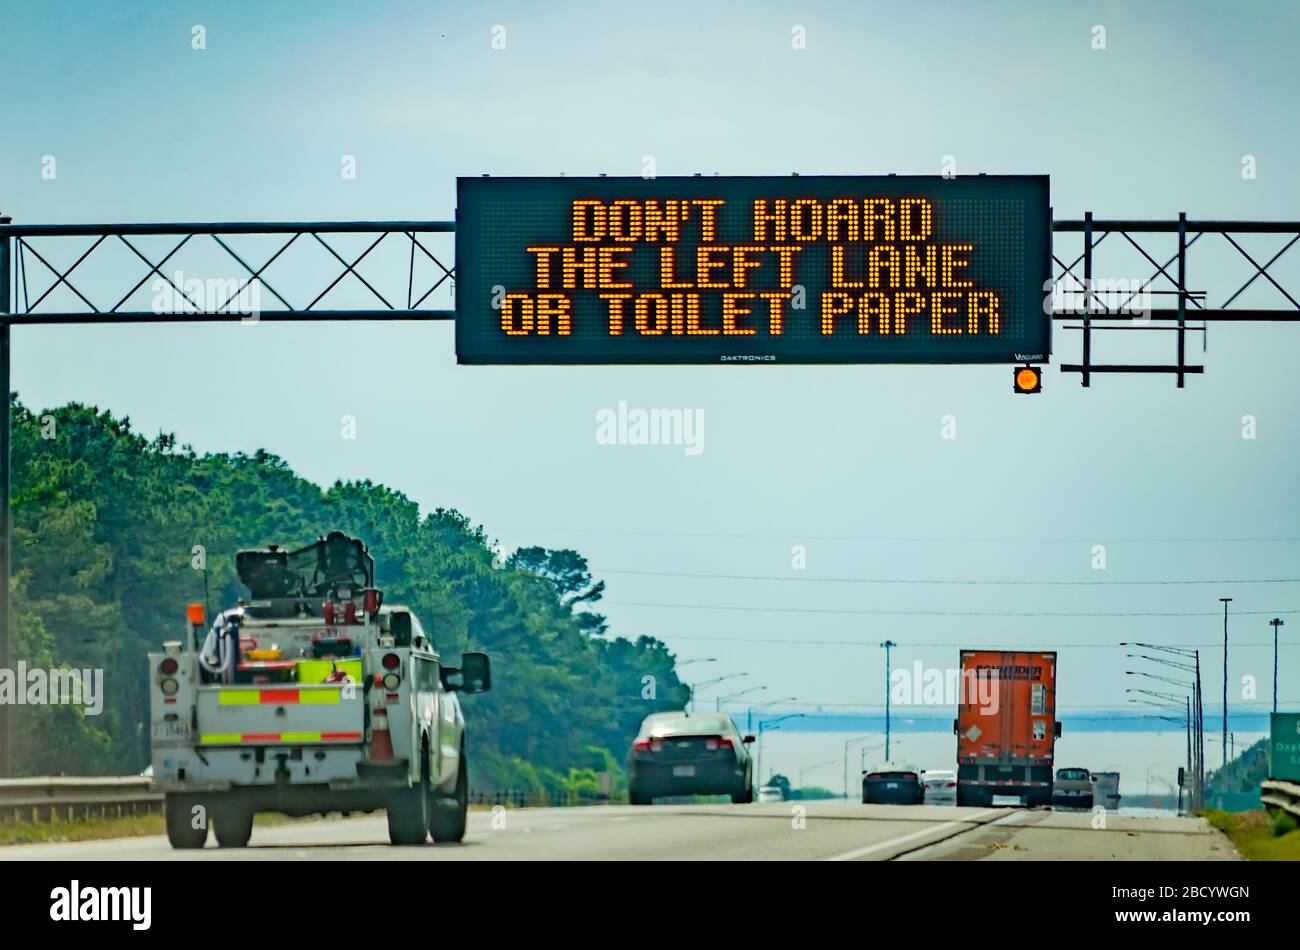 Ein elektronisches Schild auf der I-10 West ermutigt Autofahrer, während der COVID-19-Pandemie in Mobile, Alabama, nicht "die linke Spur oder das toilettenpapier zu horten". Stockfoto